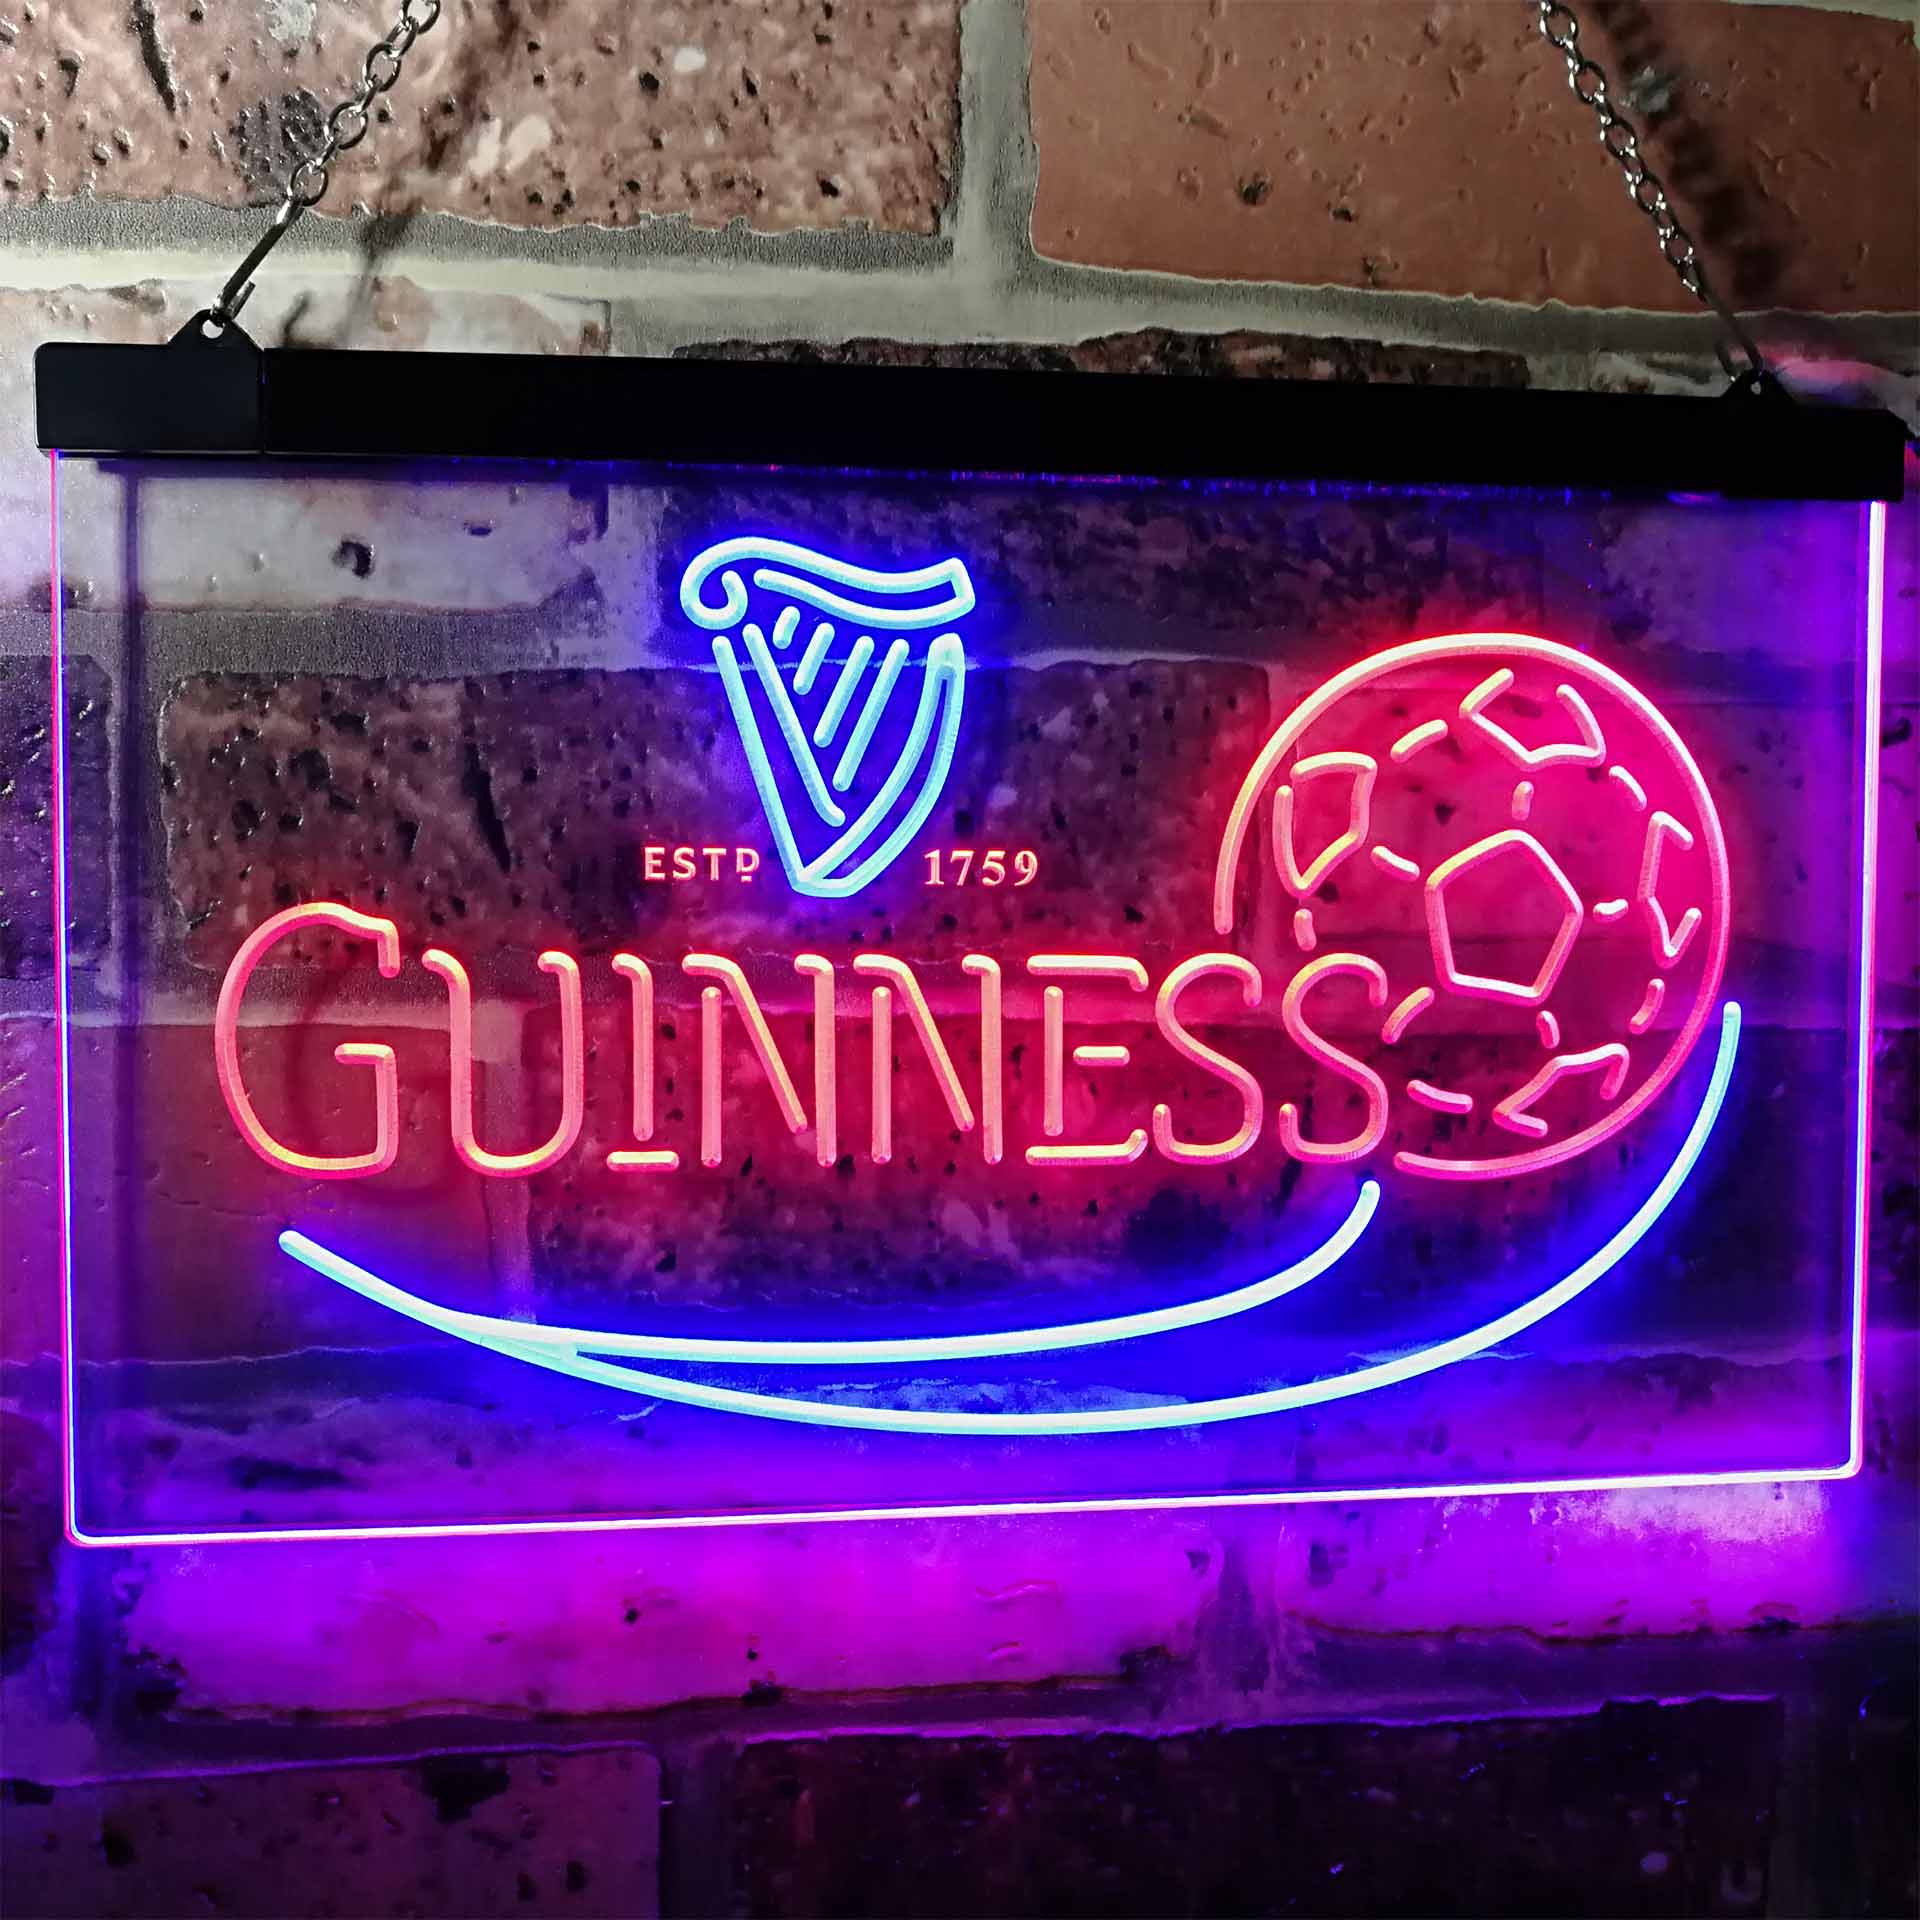 Guinness Soccer Football Beer Bar Decor Neon LED Sign